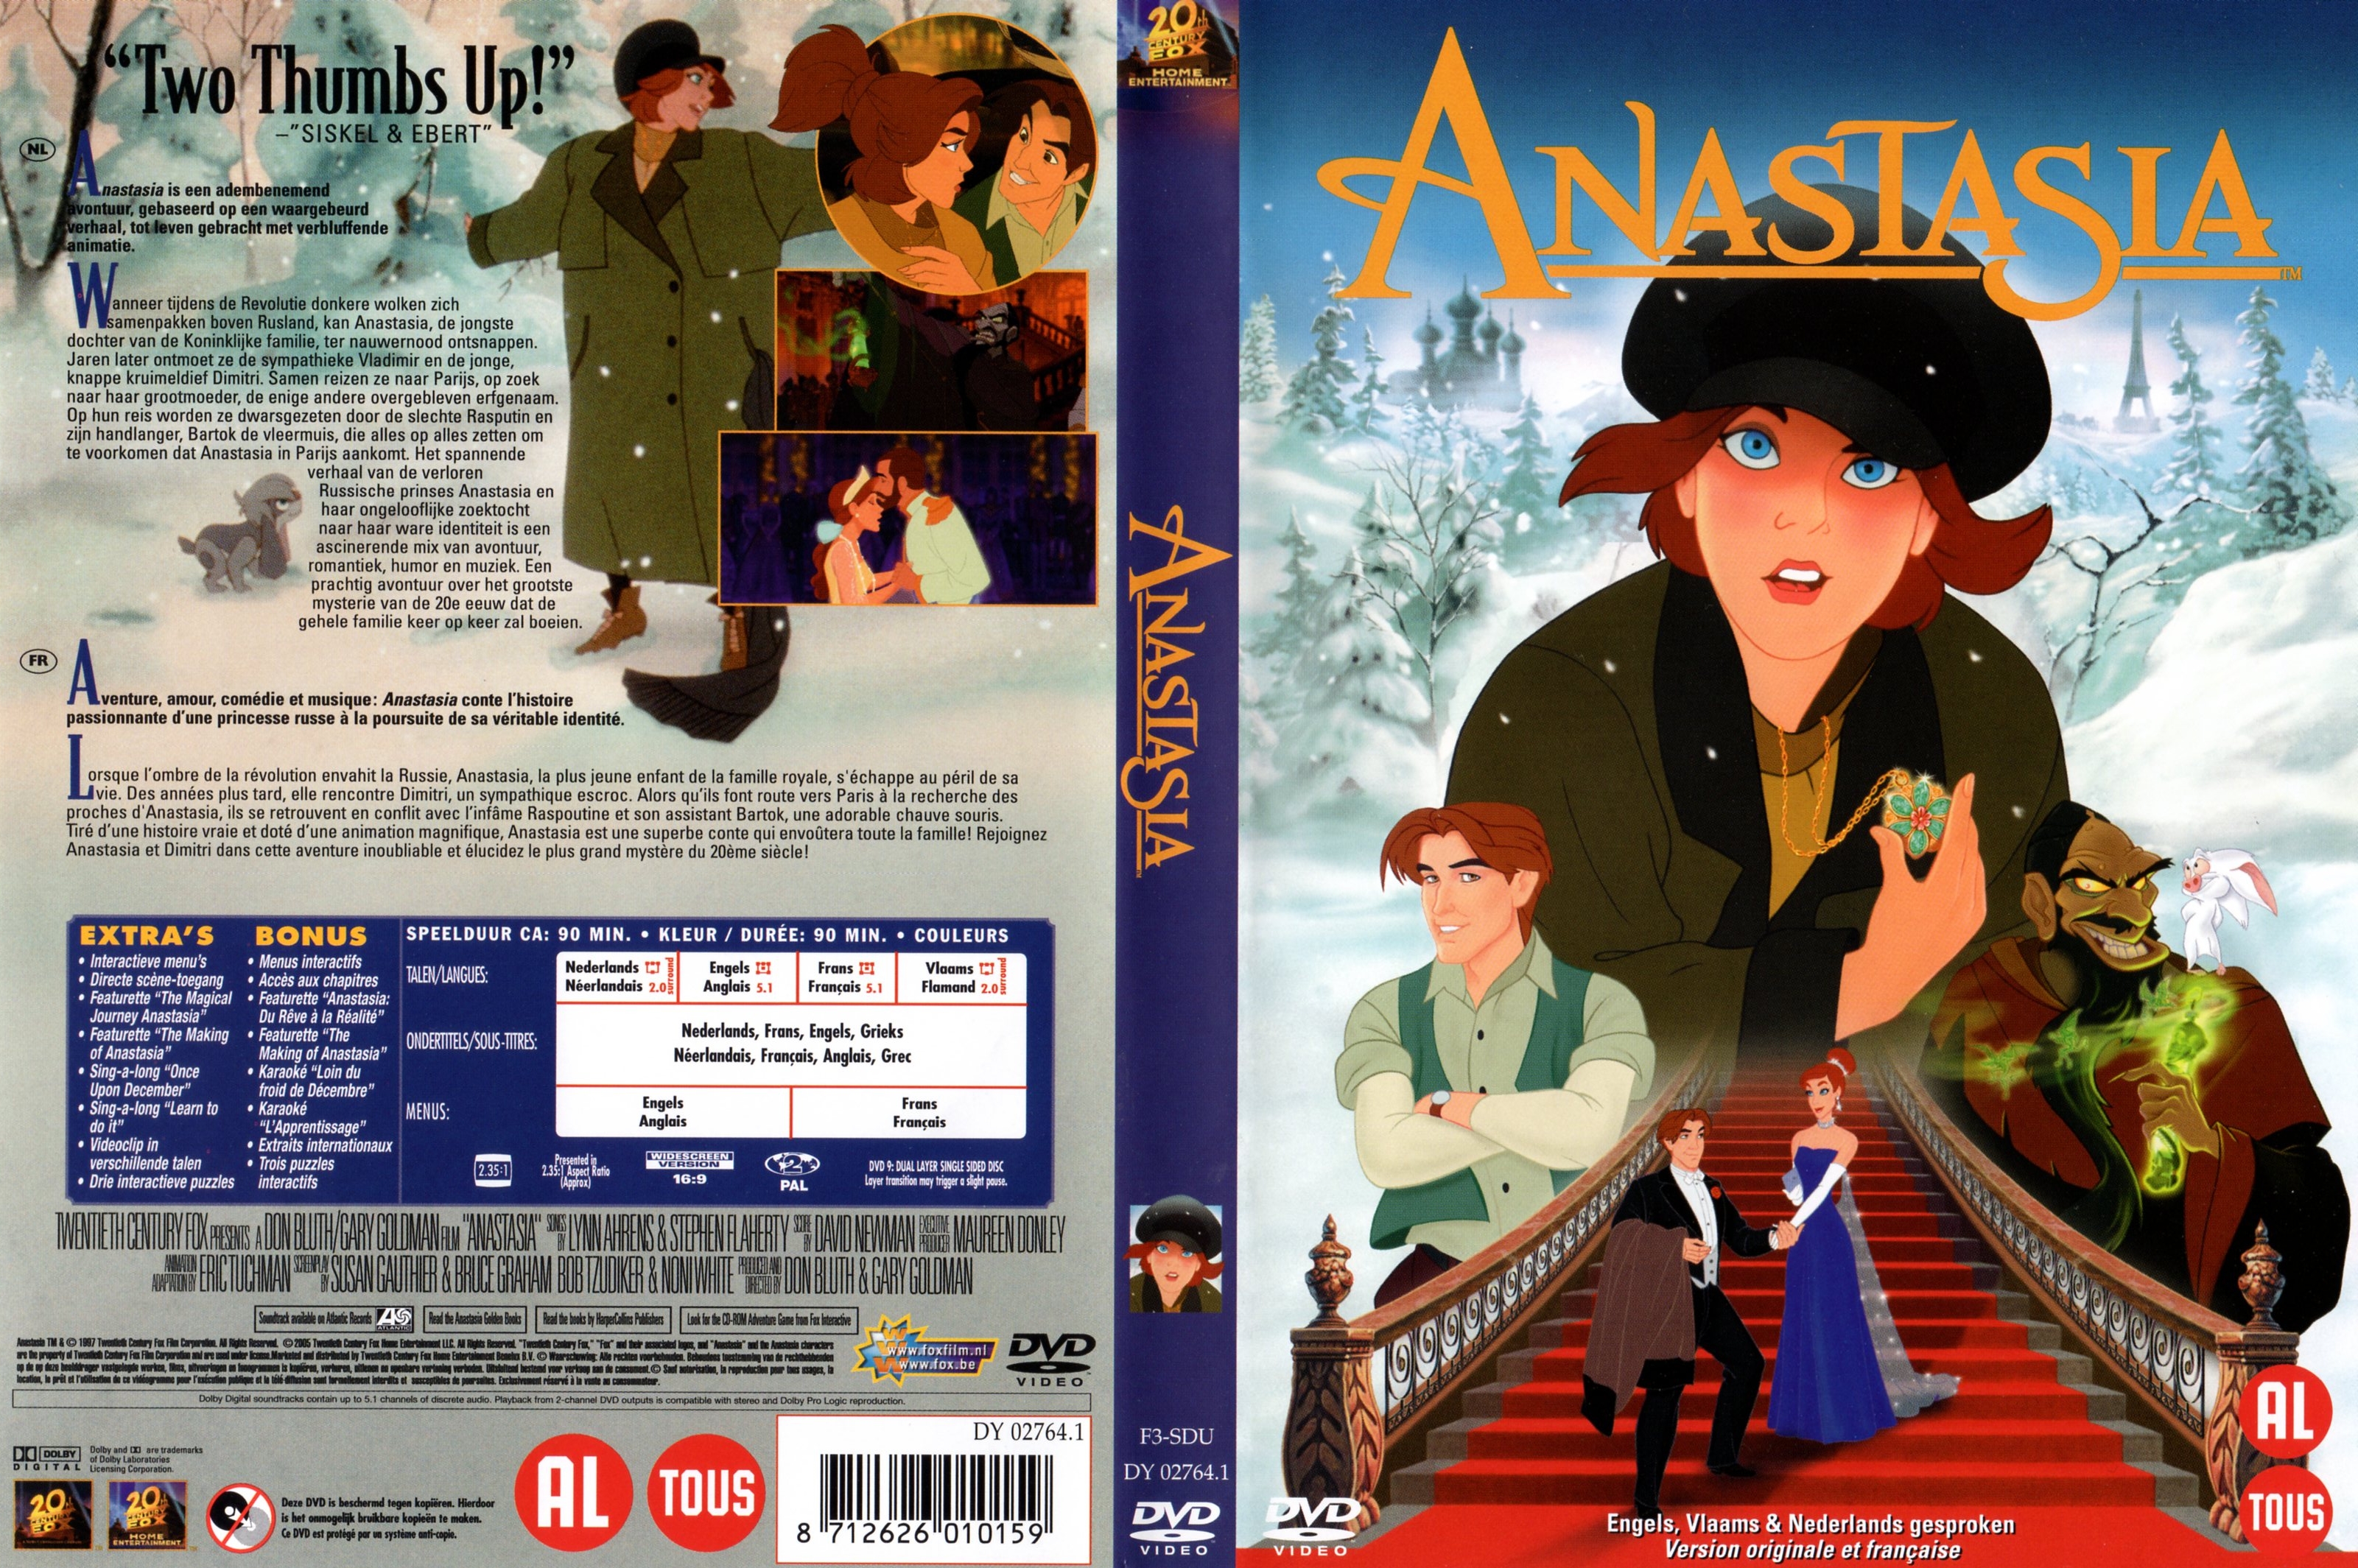 Jaquette DVD Anastasia v2